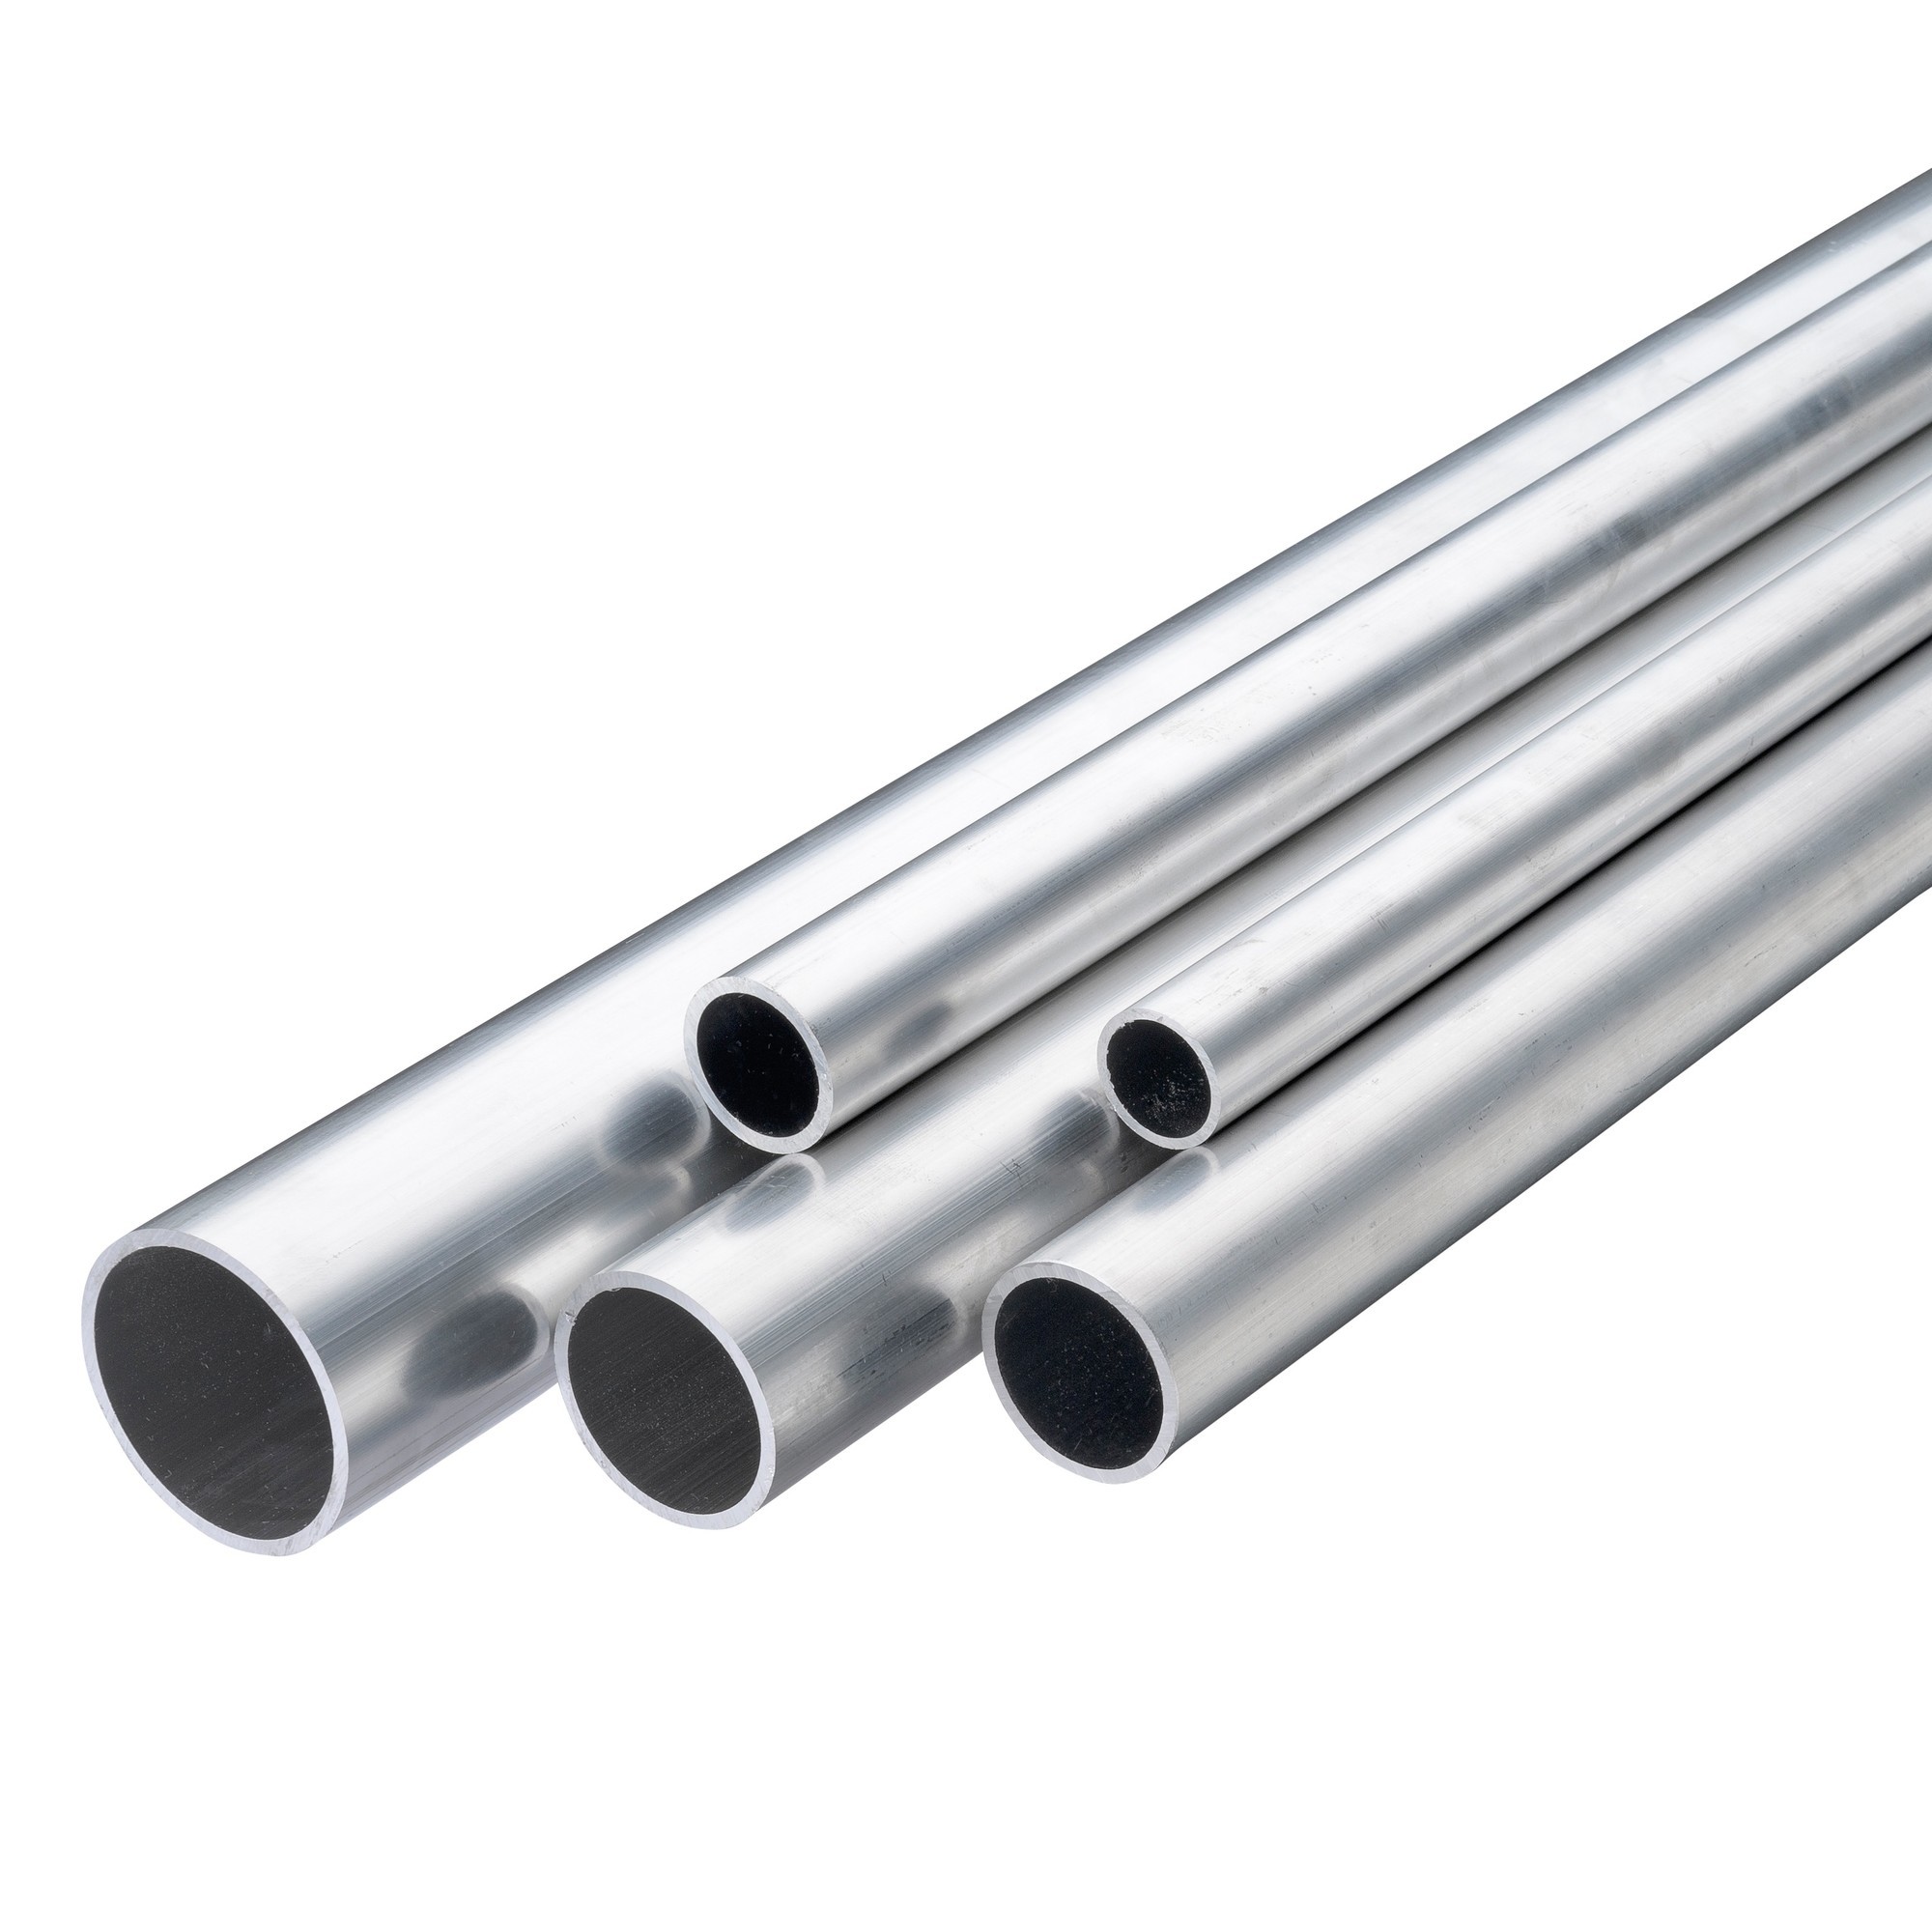 Onvervangbaar voor Luxe Aluminium Steigerbuis | Direct uit voorraad | Laagste prijs